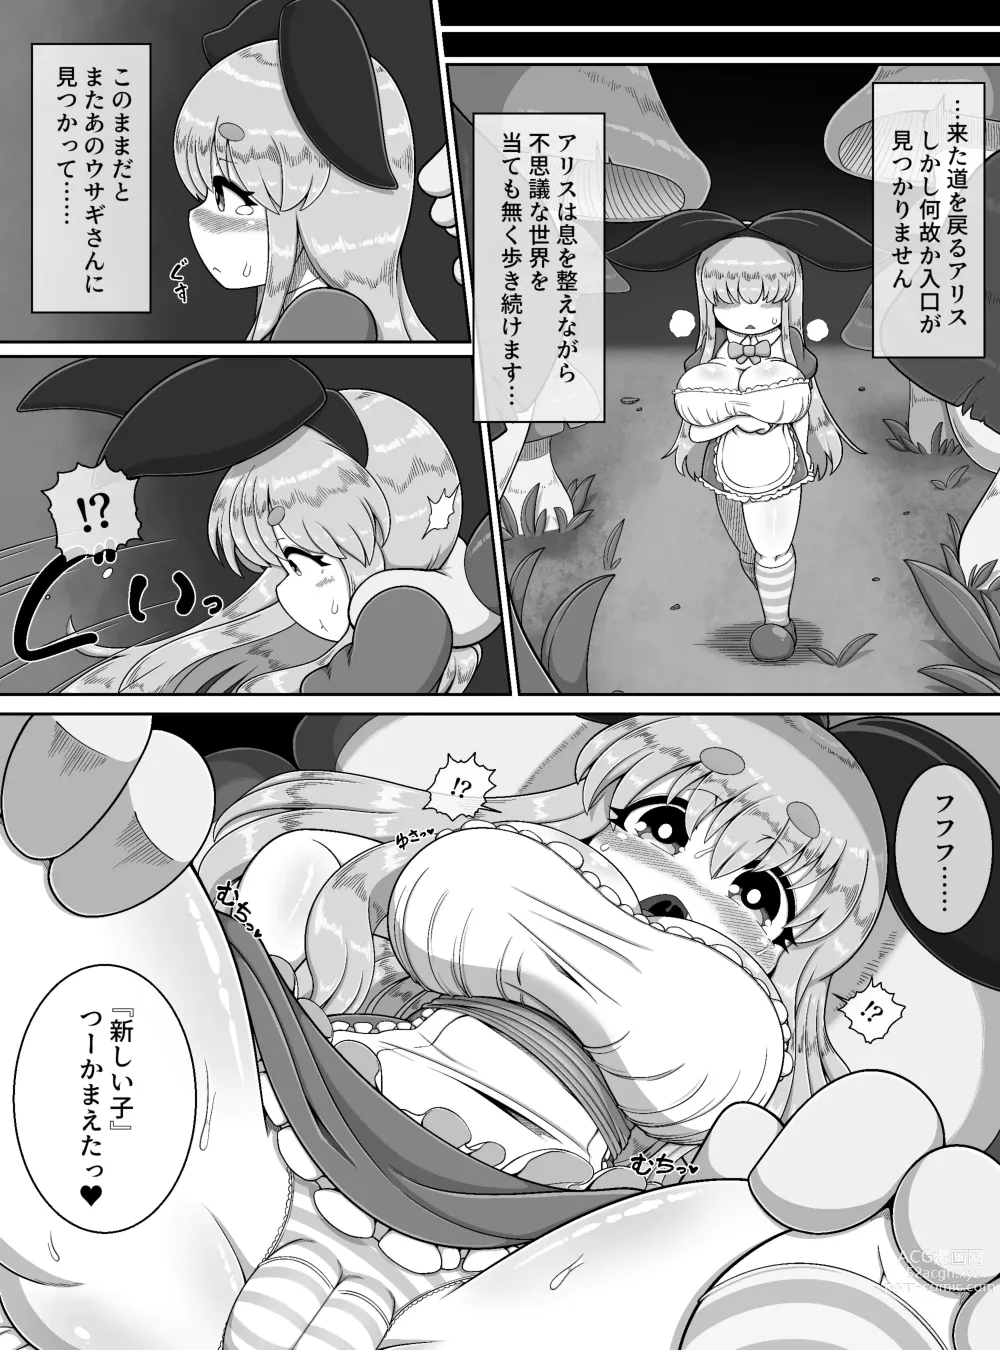 Page 12 of doujinshi Fushiginokuni de Arisu ga okasa reru dake no manga